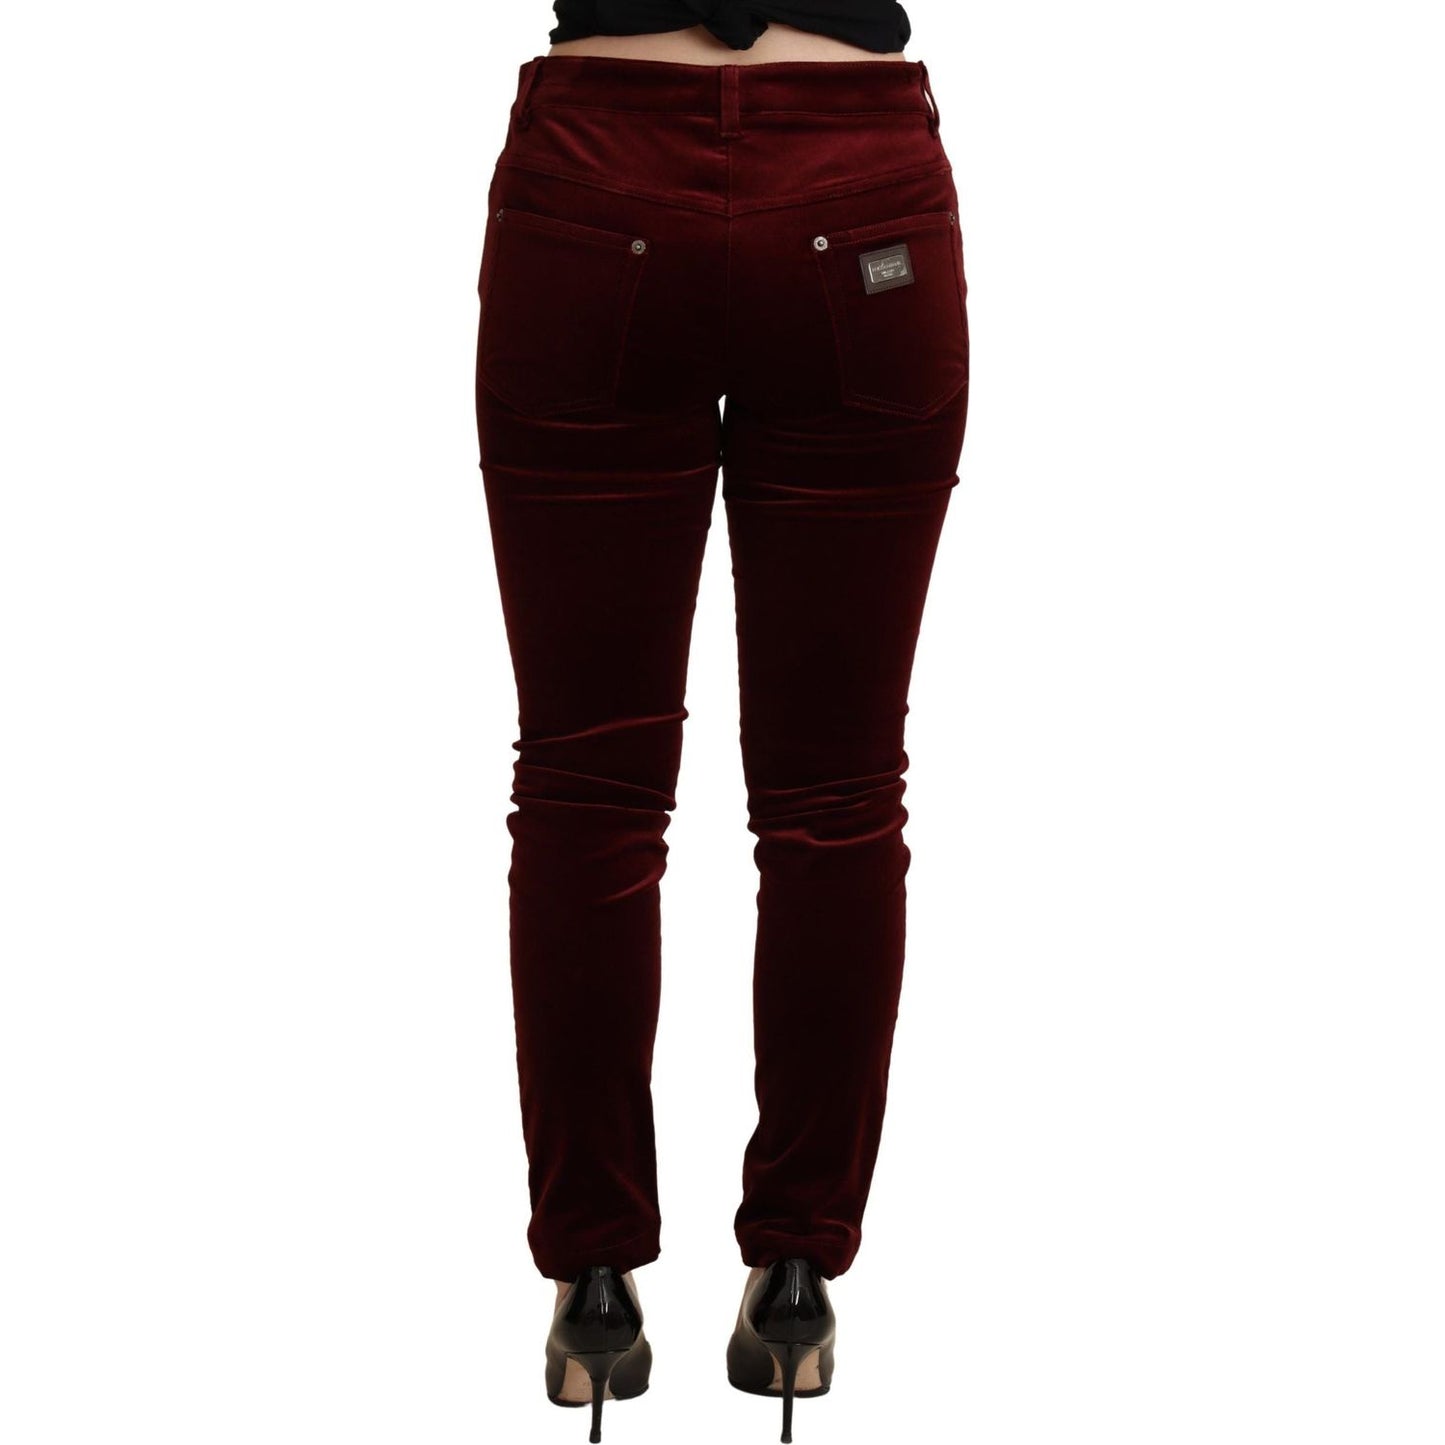 Dolce & Gabbana Exquisite Bordeaux Red Skinny Pants bordeaux-red-velvet-skinny-trouser